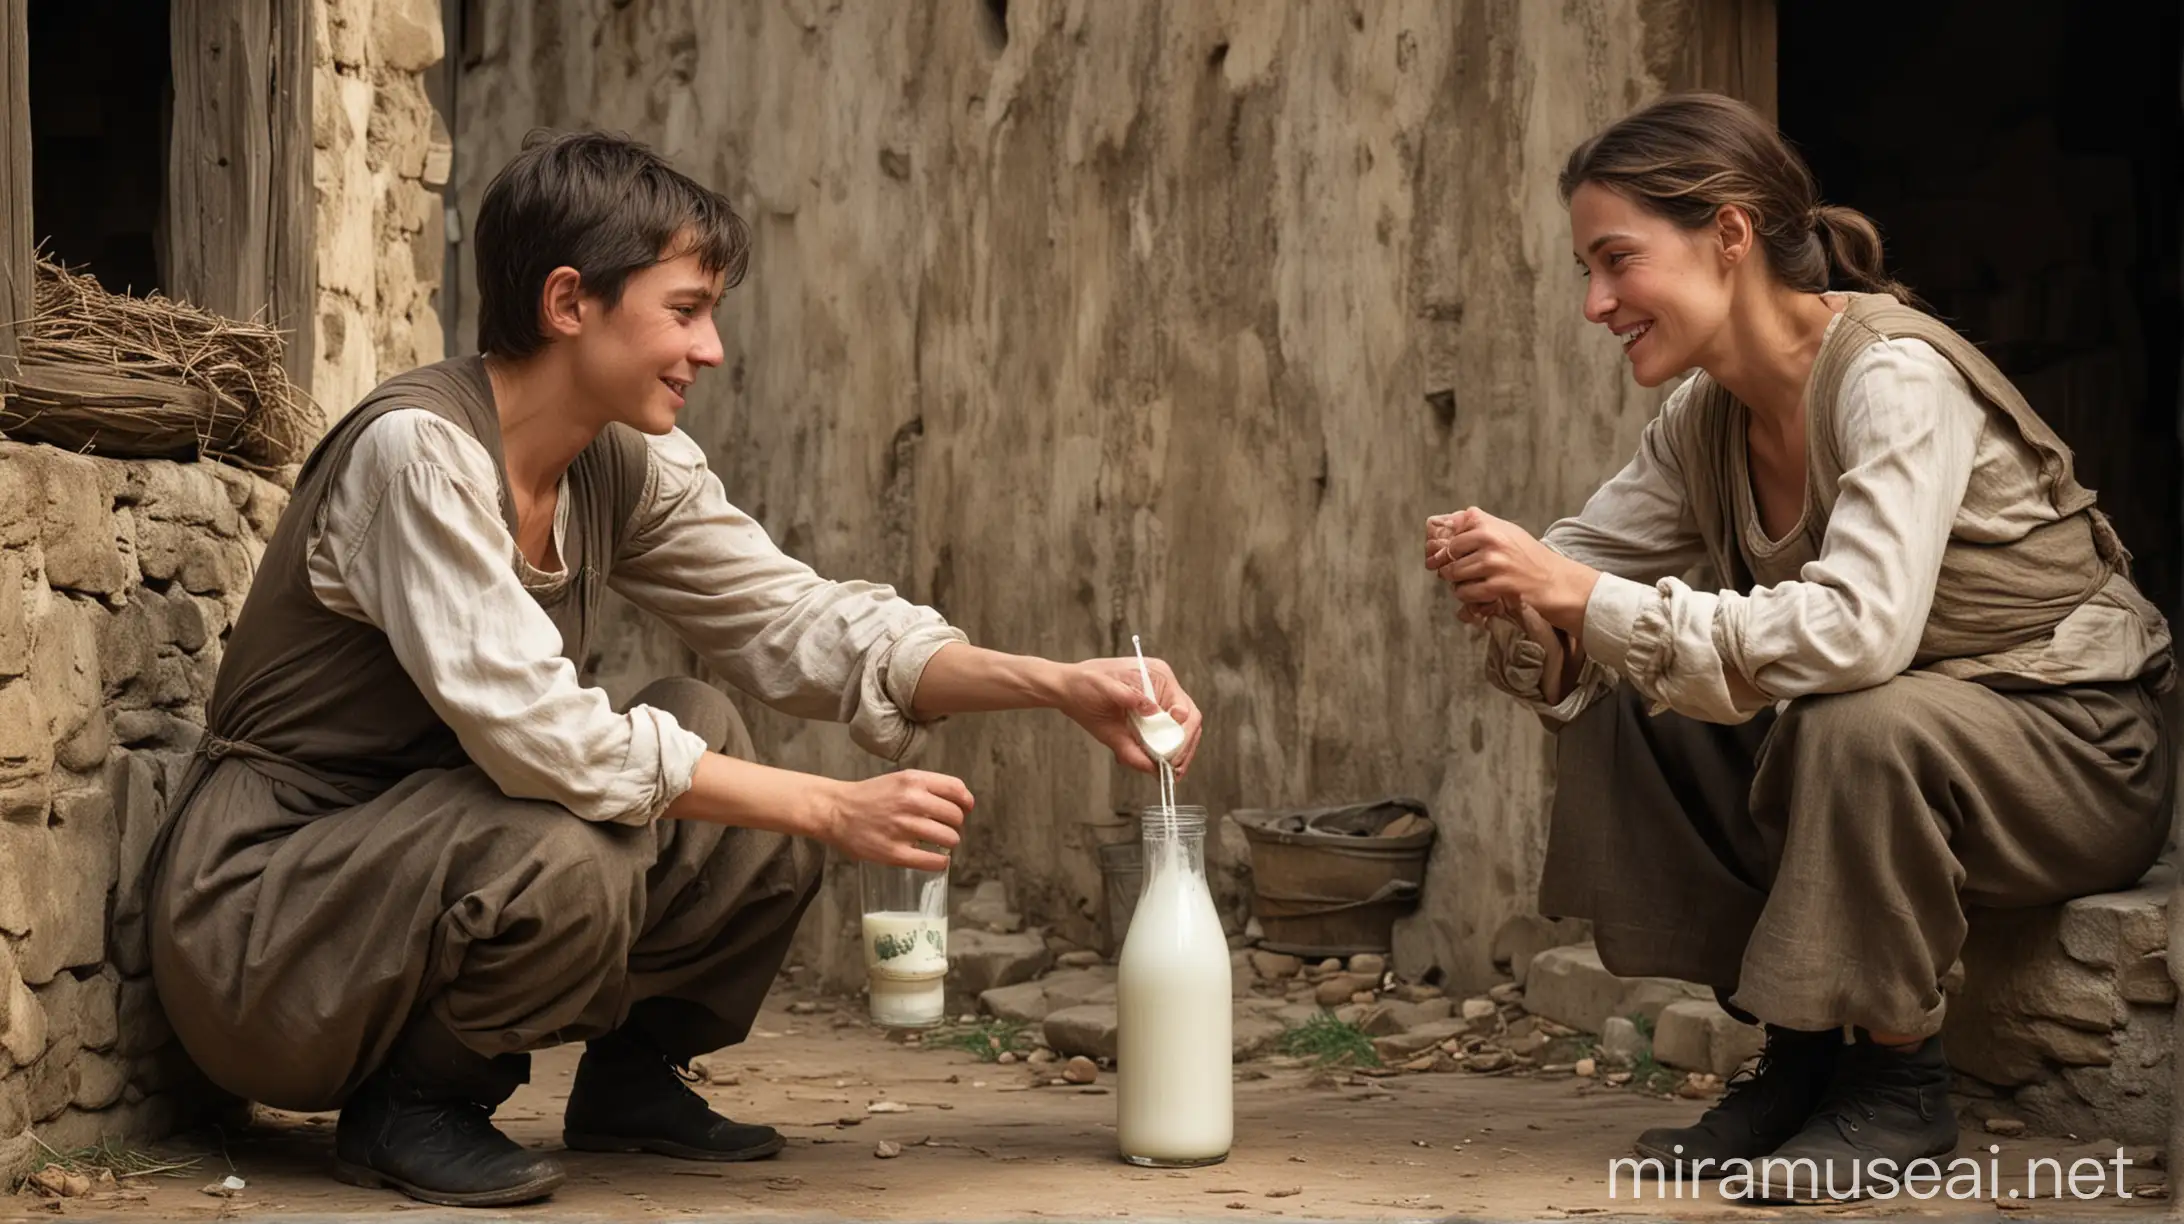 В одной старой деревушке,добрая женщина протягивает стакан молока бедному молодому юнуше лет 20 по имени Том. 